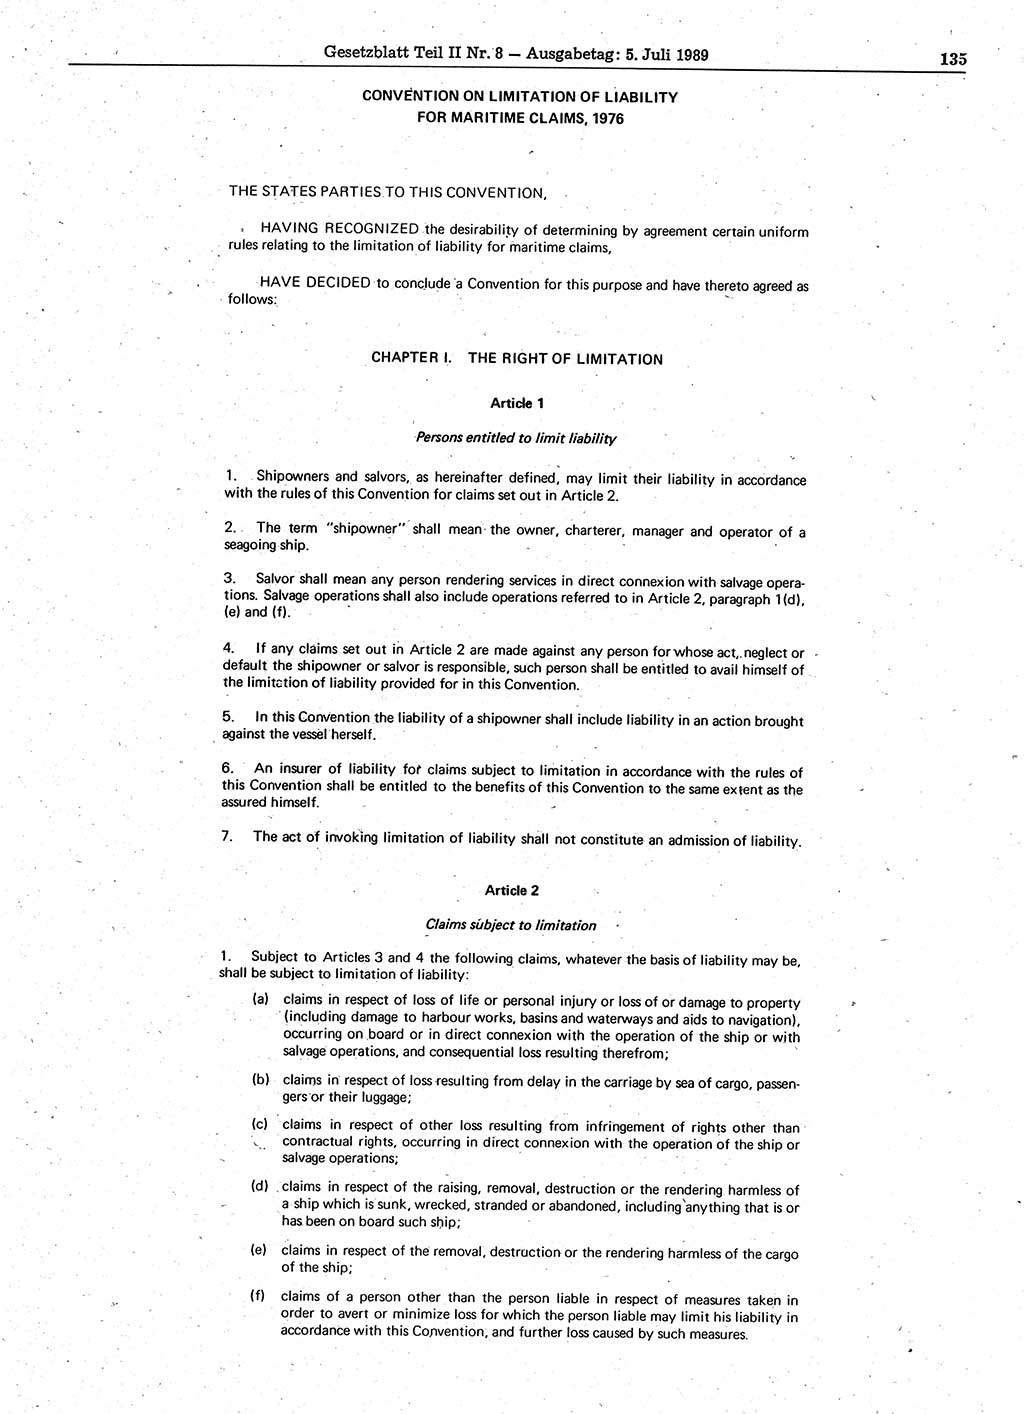 Gesetzblatt (GBl.) der Deutschen Demokratischen Republik (DDR) Teil ⅠⅠ 1989, Seite 135 (GBl. DDR ⅠⅠ 1989, S. 135)